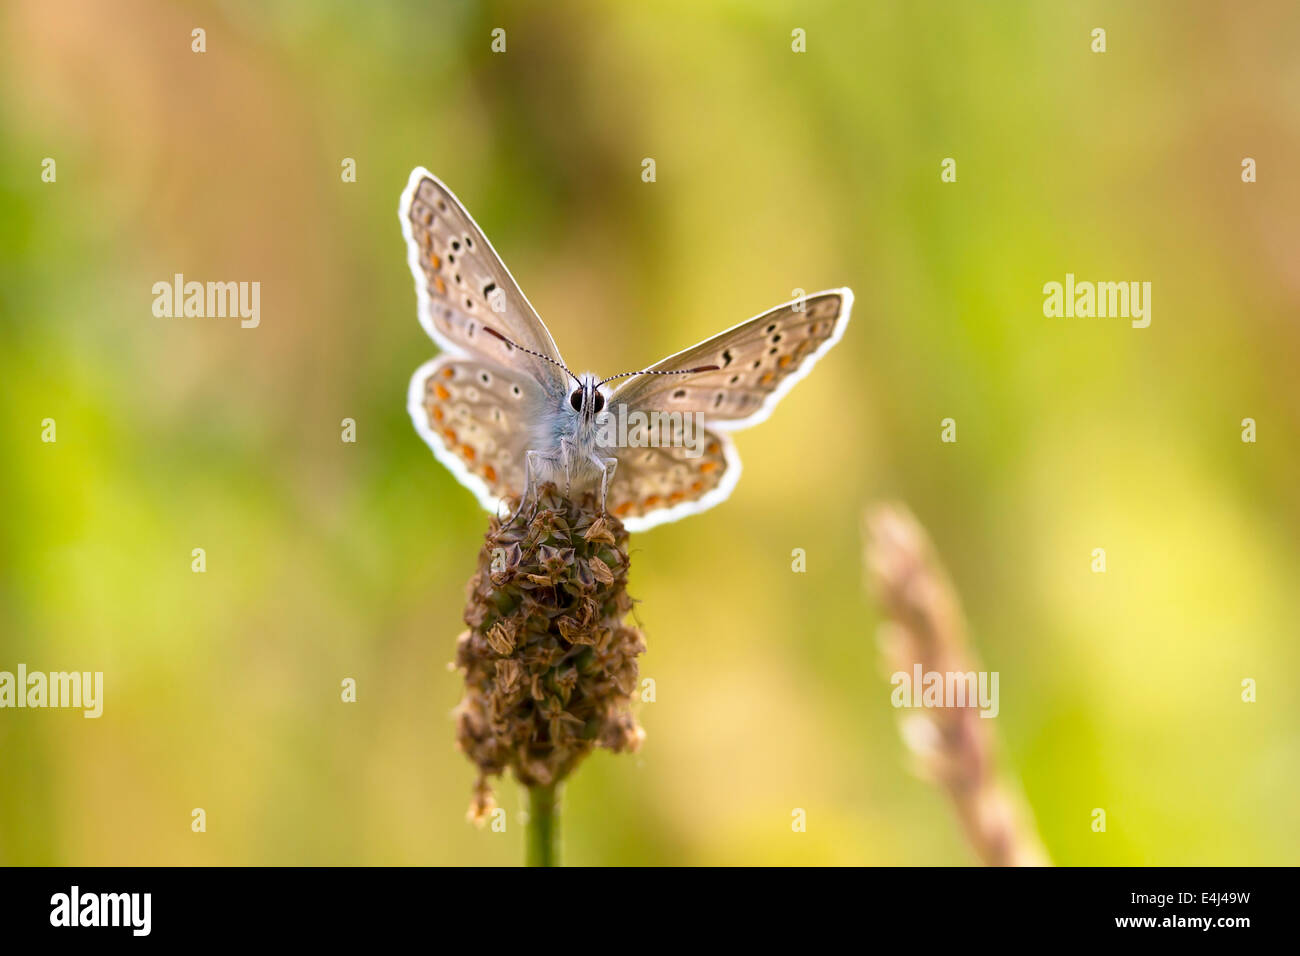 Mariposa Azul común descansando y secando sus alas en el sol. Foto de stock